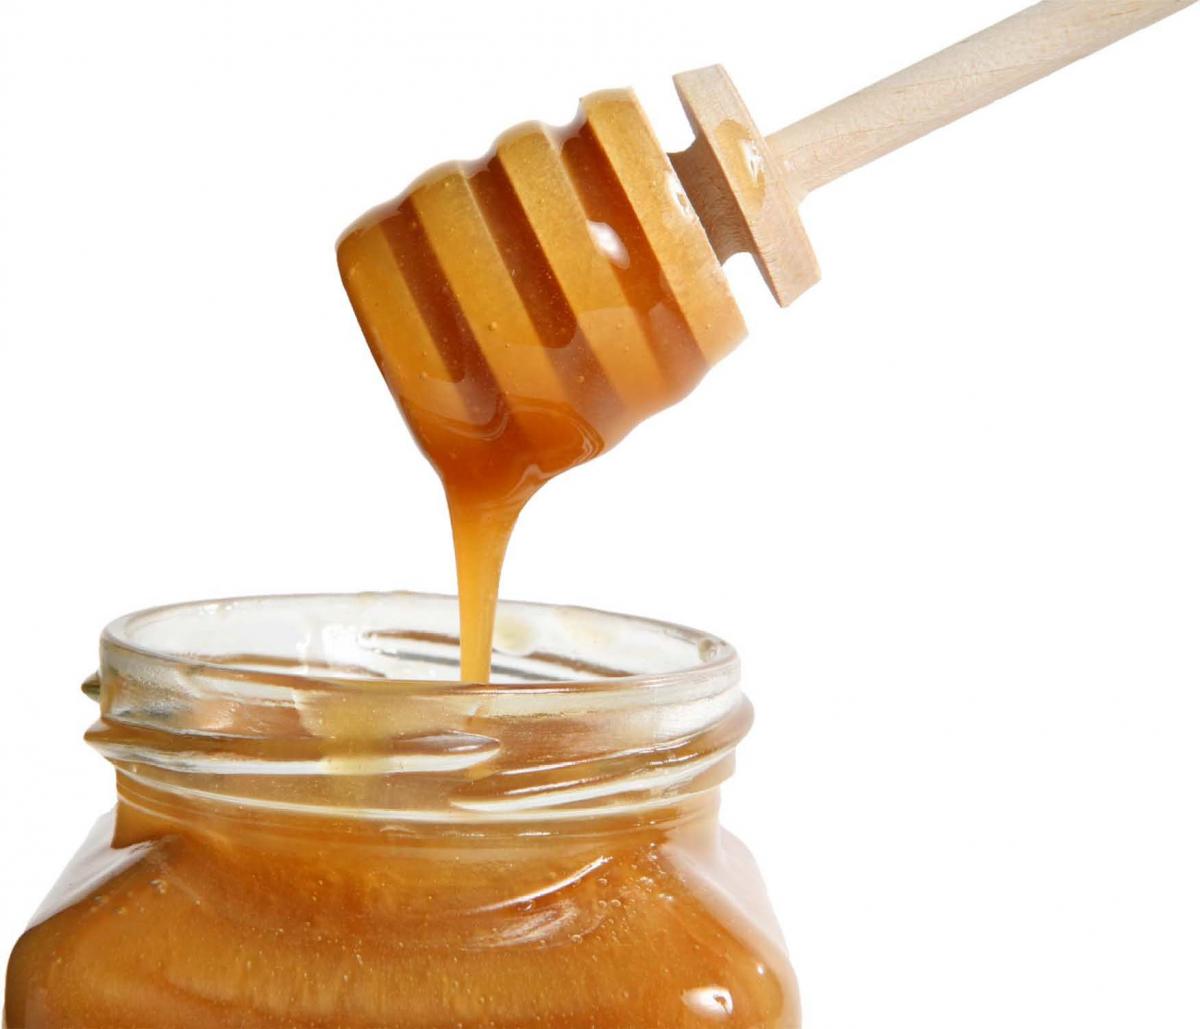 benefits of manuka honey